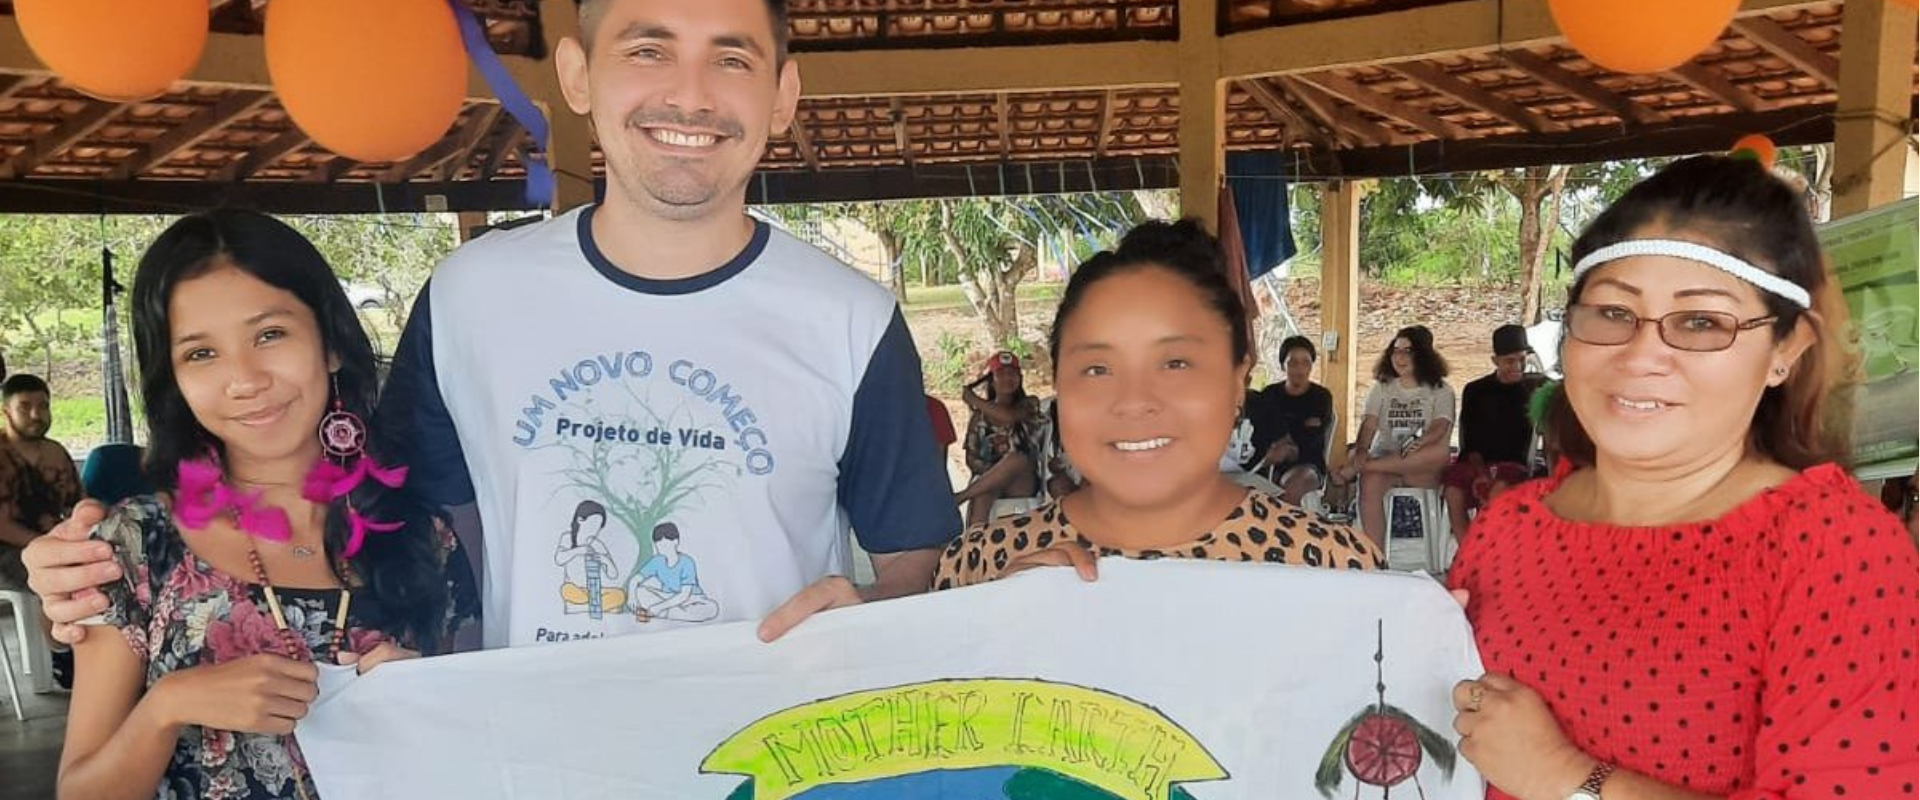 Encontro de Jovens da REPAM chama atenção para atuação da juventude na defesa da vida na Amazônia